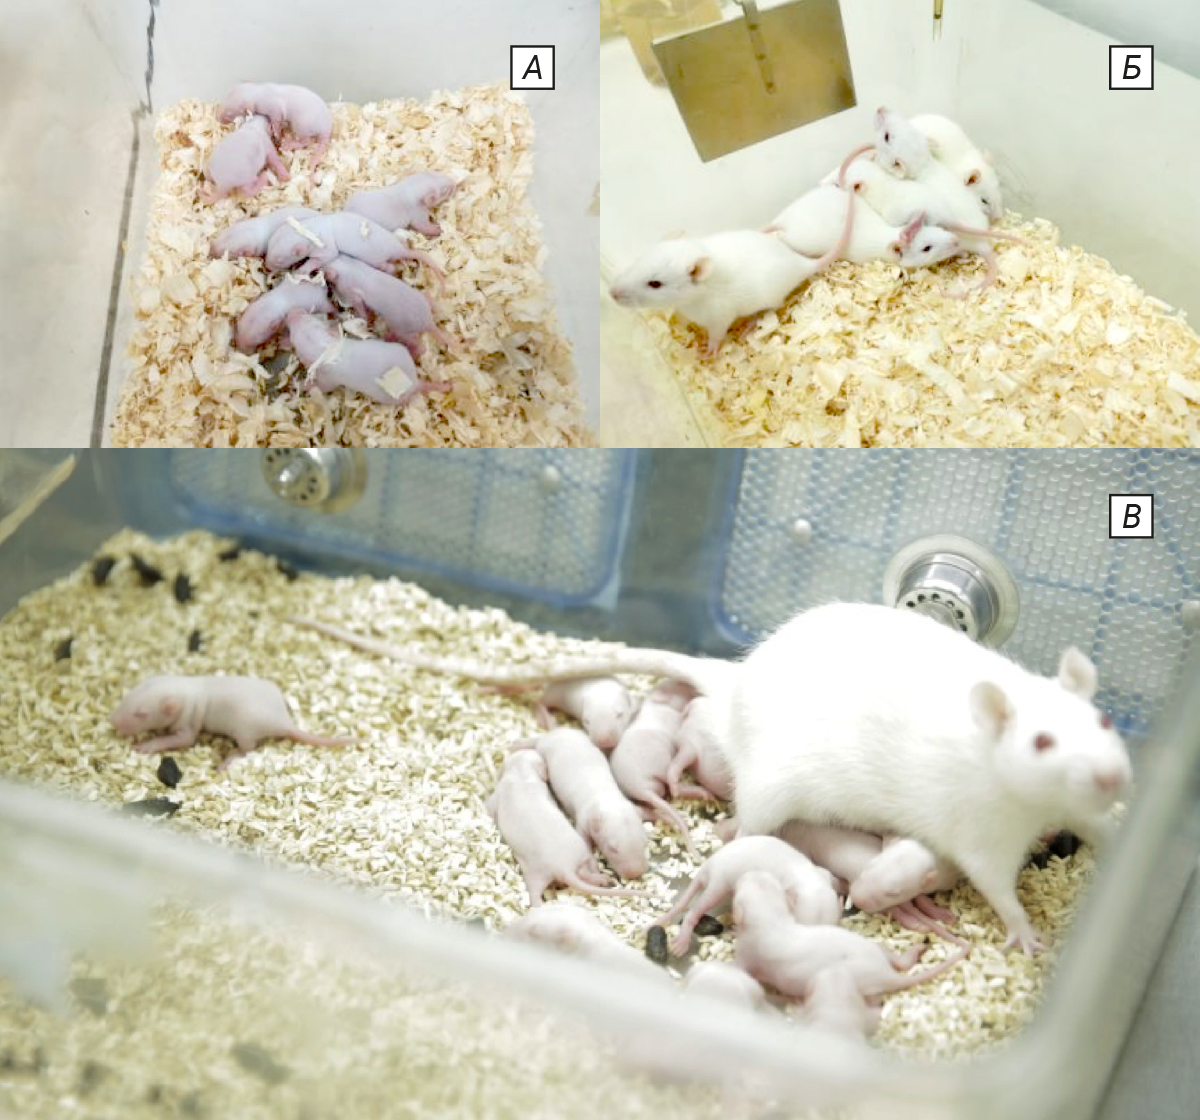  <strong>Рис. 1. </strong>Неполовозрелые животные: <em>а</em> – крысы младенческого возраста; <em>б</em> – крысы детского возраста; <em>в</em> – совместное содержание с матерью